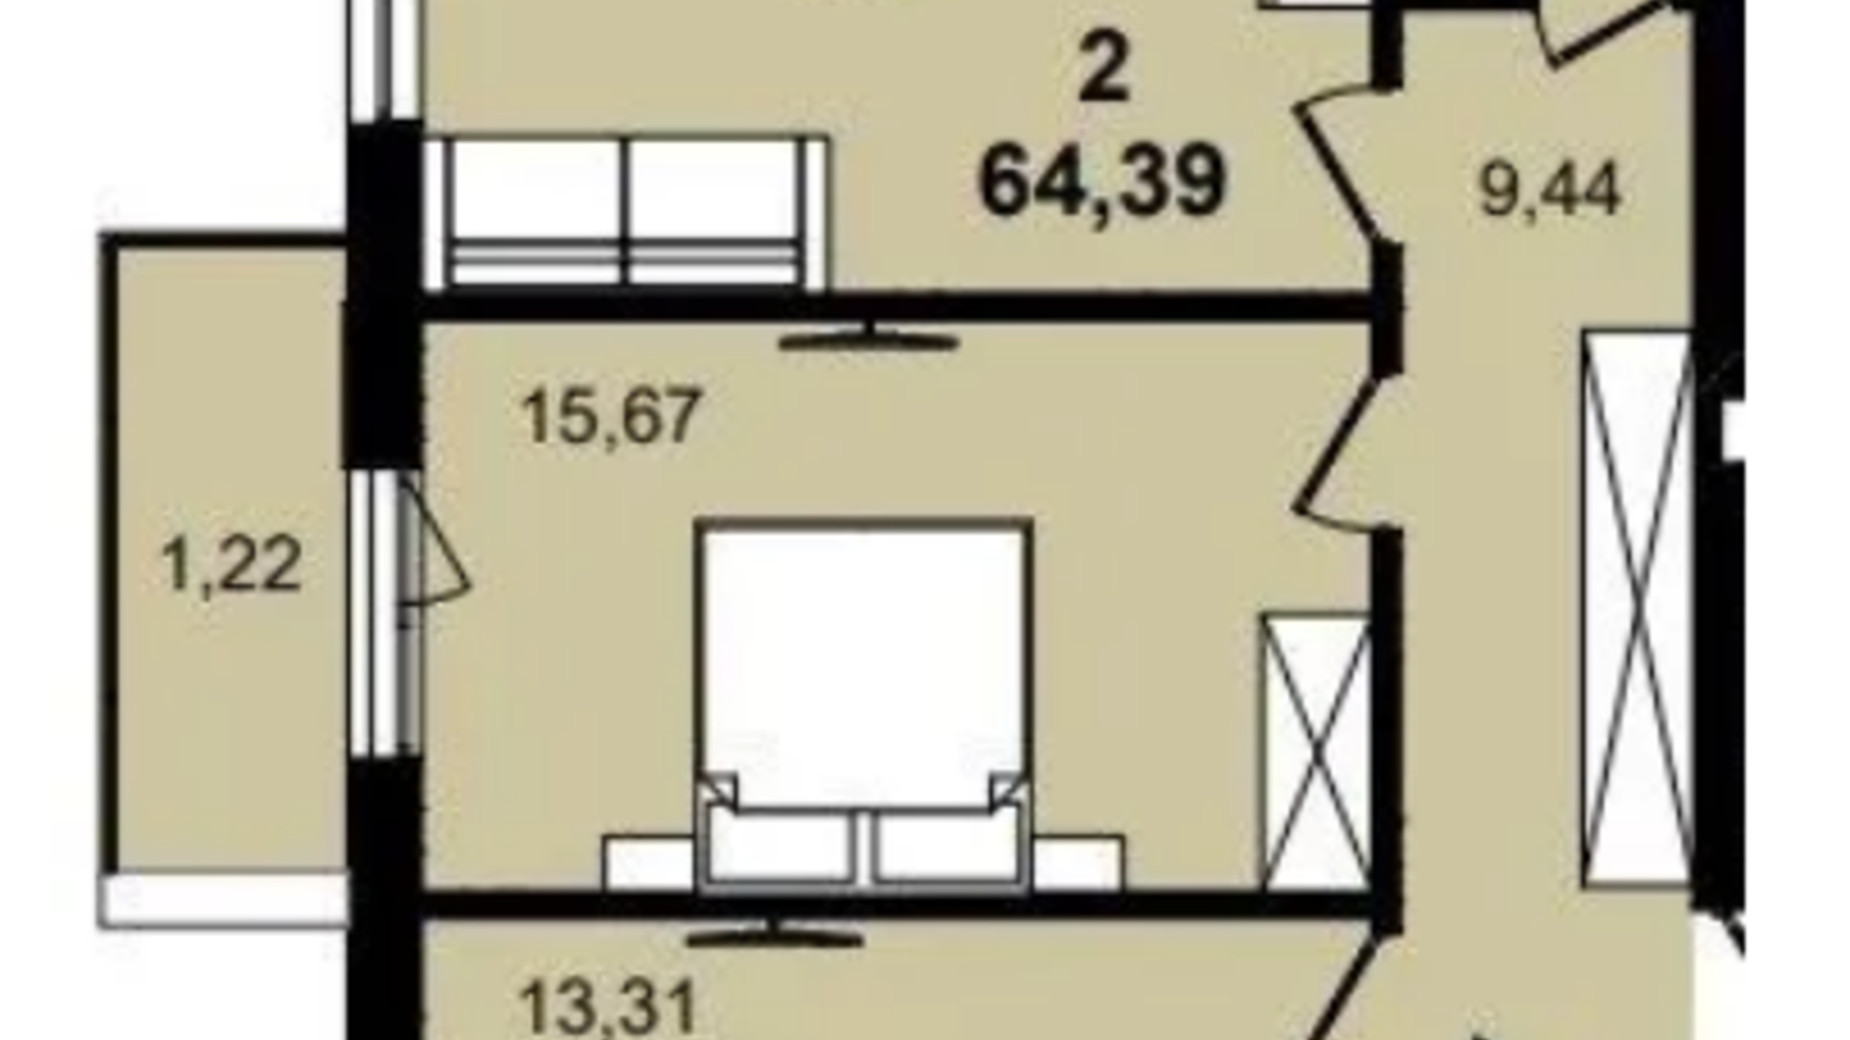 Планировка 2-комнатной квартиры в ЖК Infinity Park 64.39 м², фото 630792